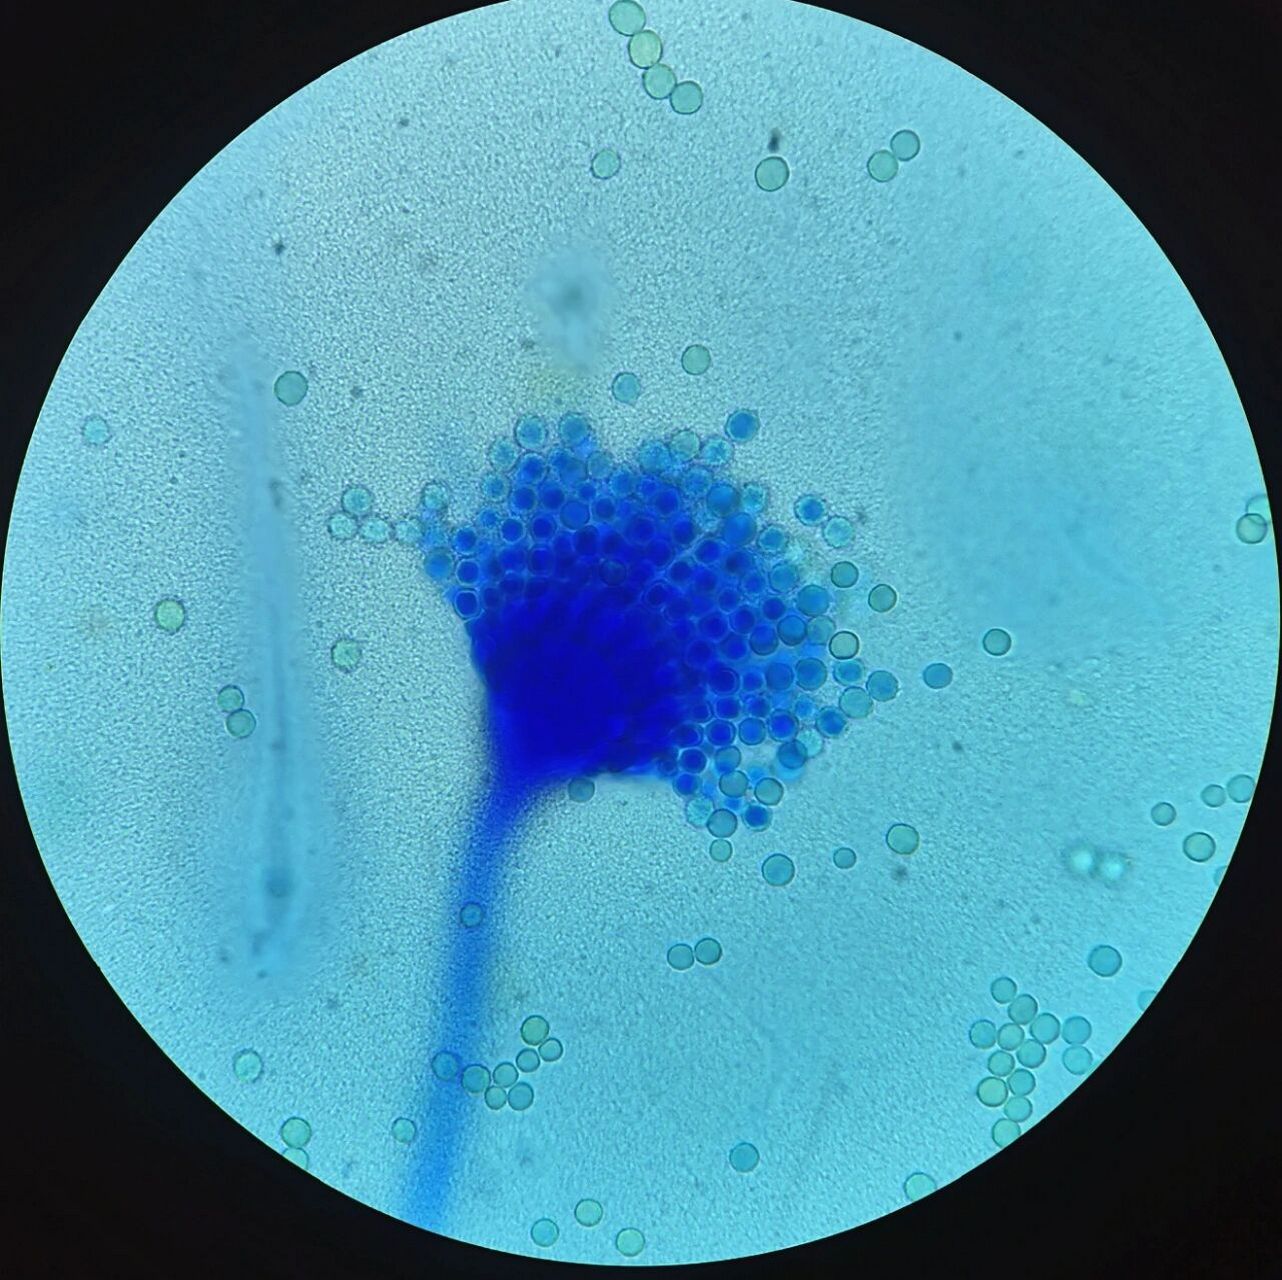 黄曲霉棉兰染色×1000 培养特征:黄曲霉菌在 sda 及 pda 培养基上25